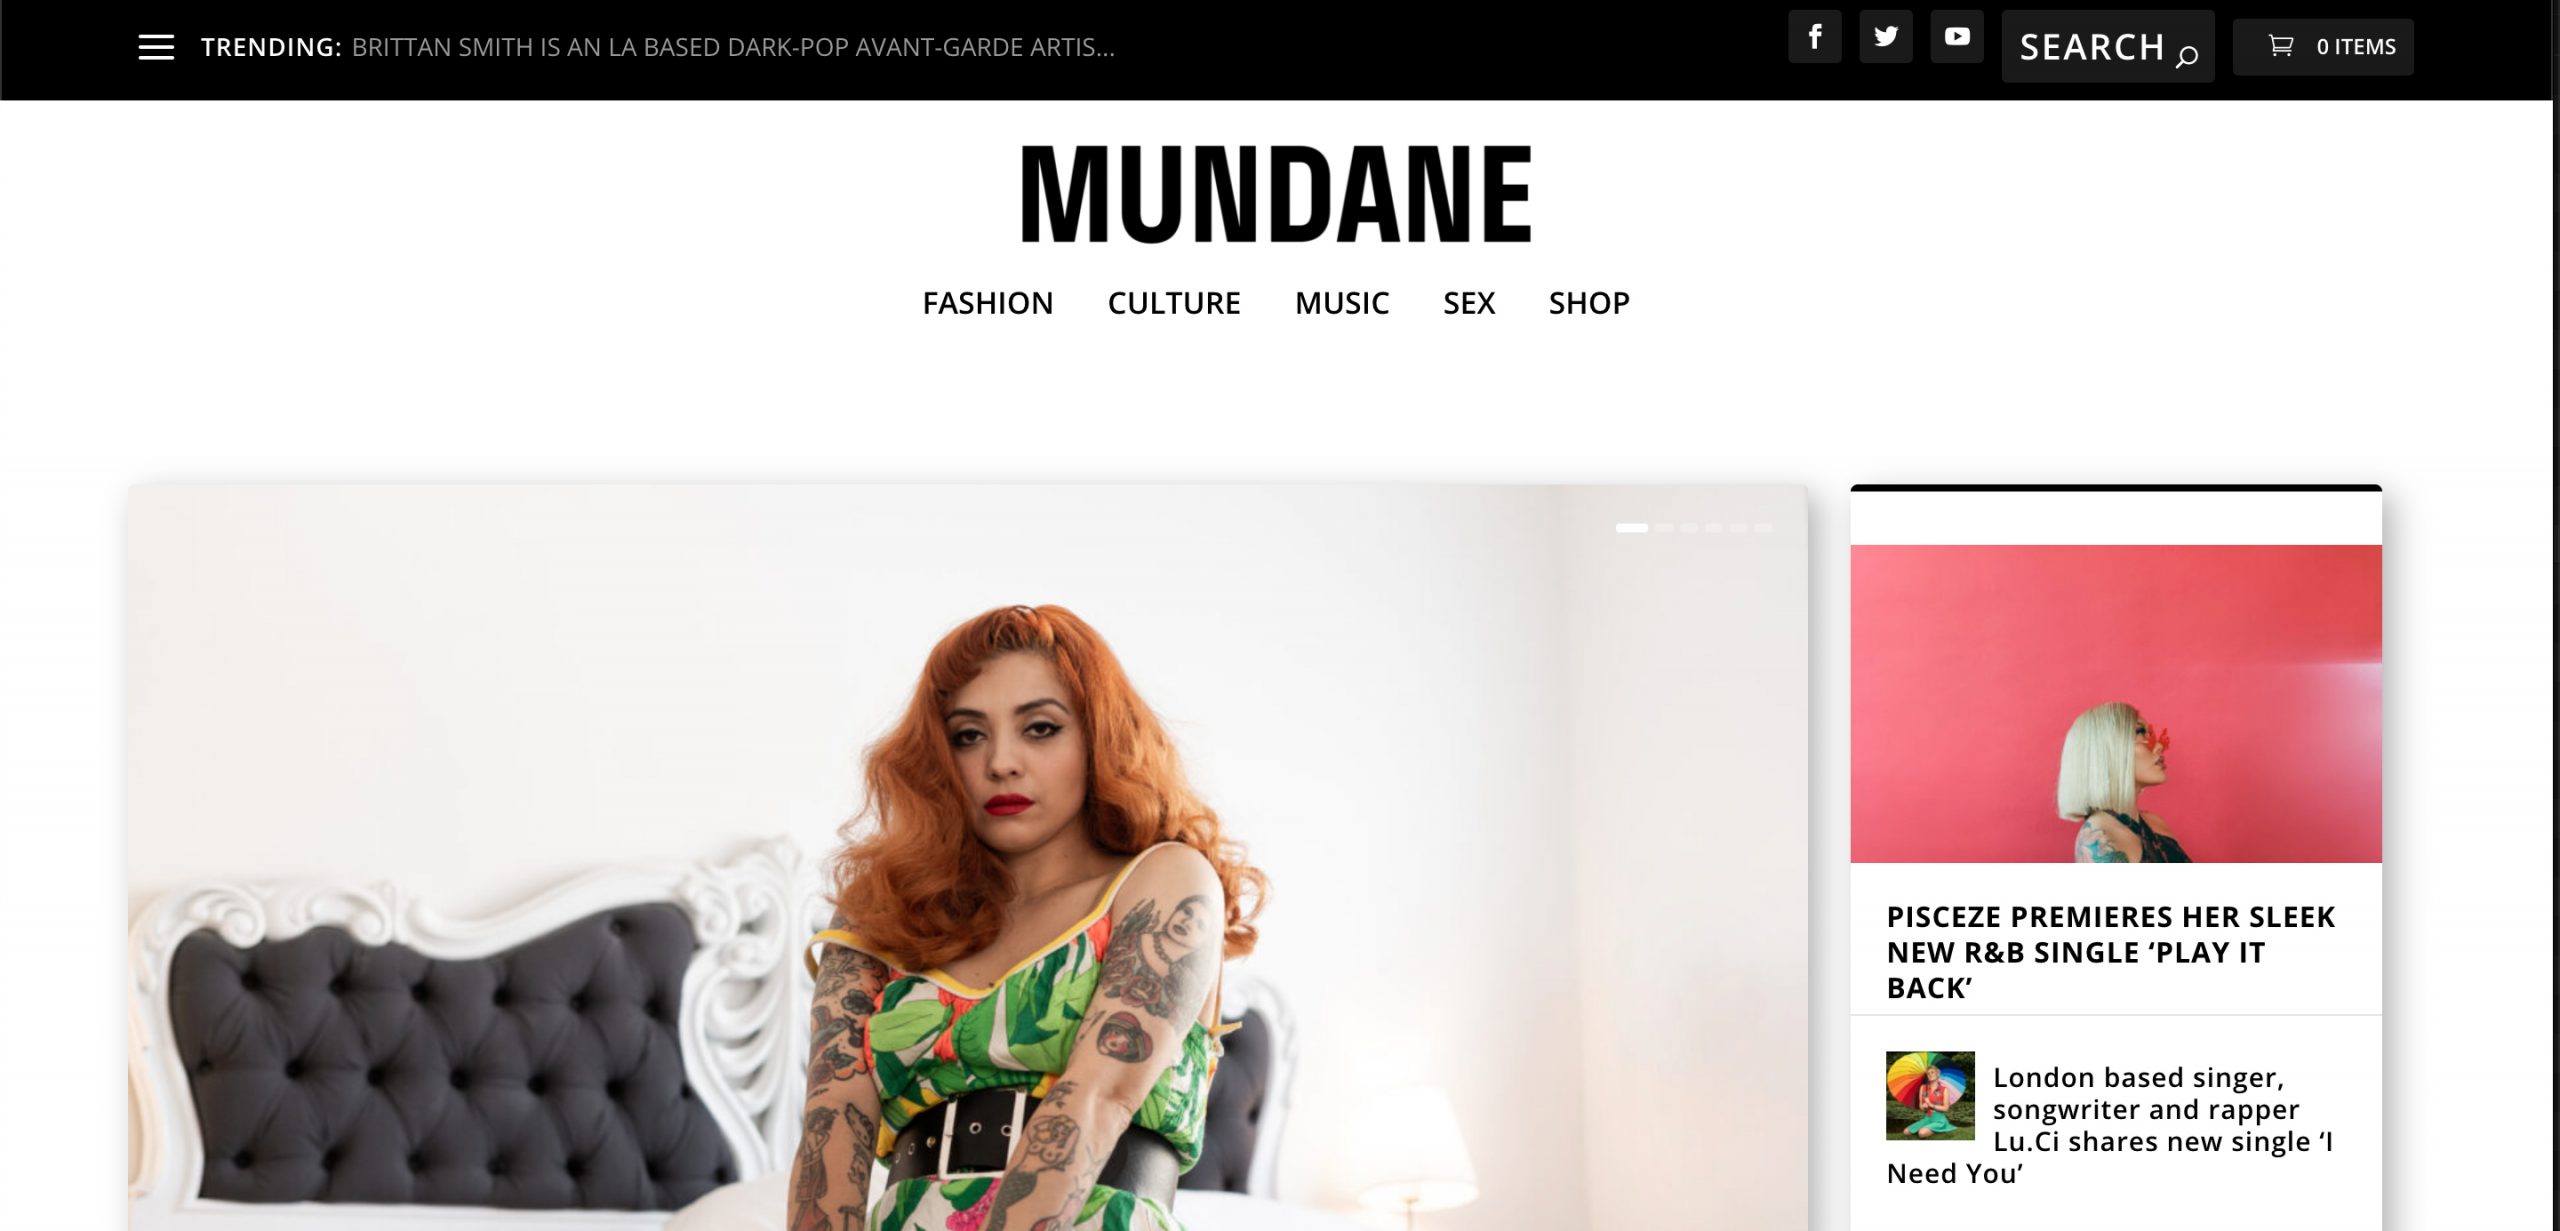 Mundane Magazine